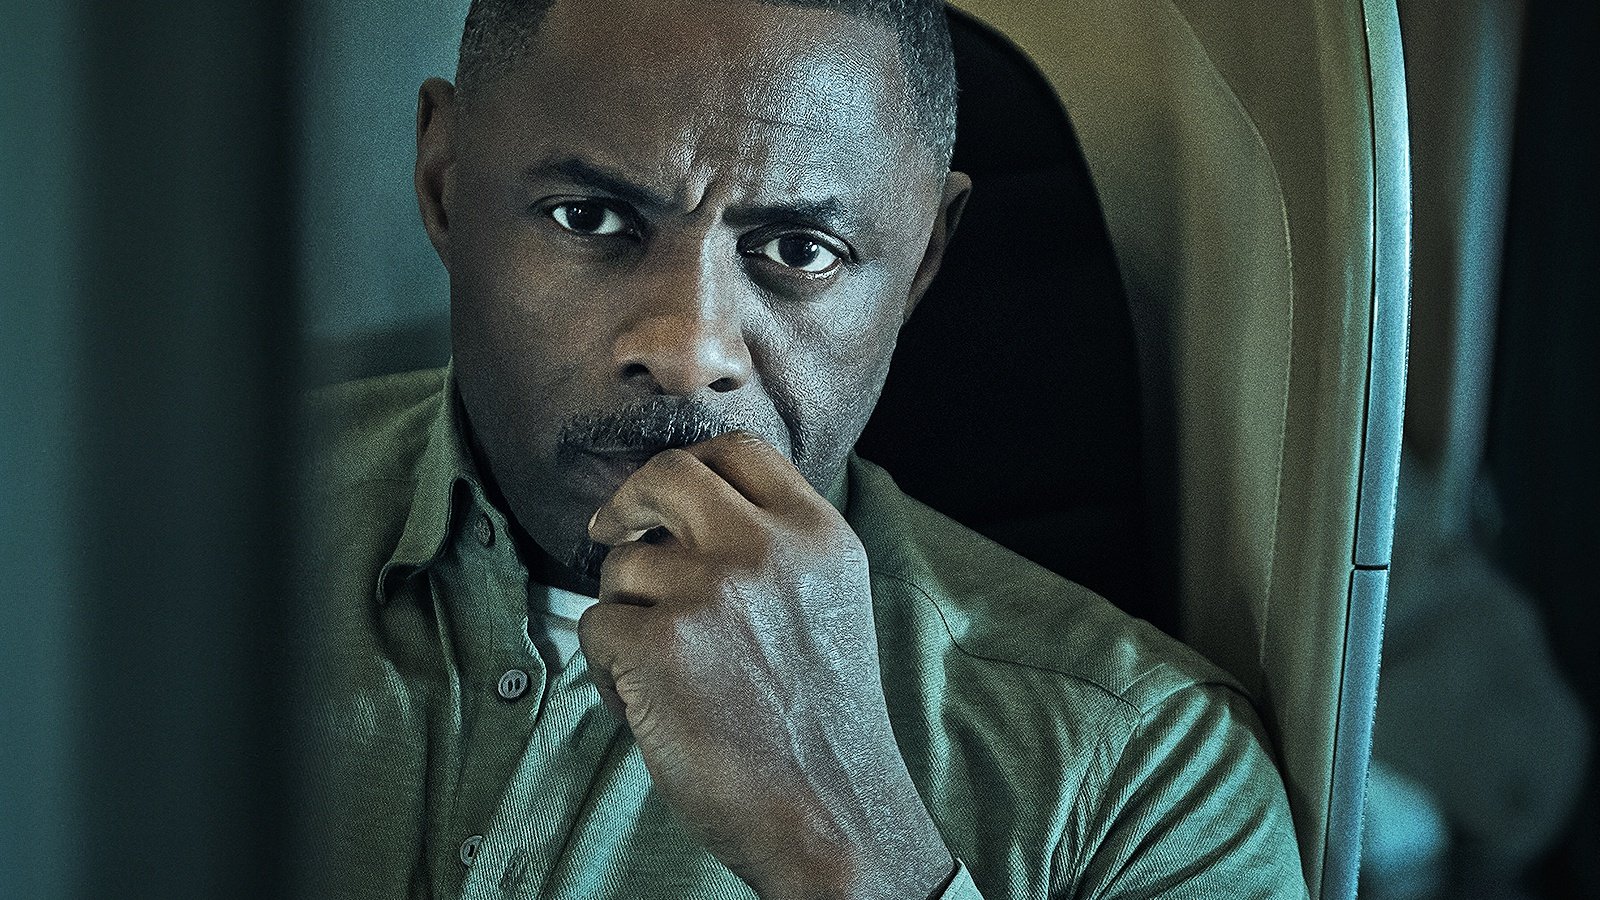 Al momento stai visualizzando Hijack in Streaming 4k: Analisi Dettagliata del Thriller con Idris Elba